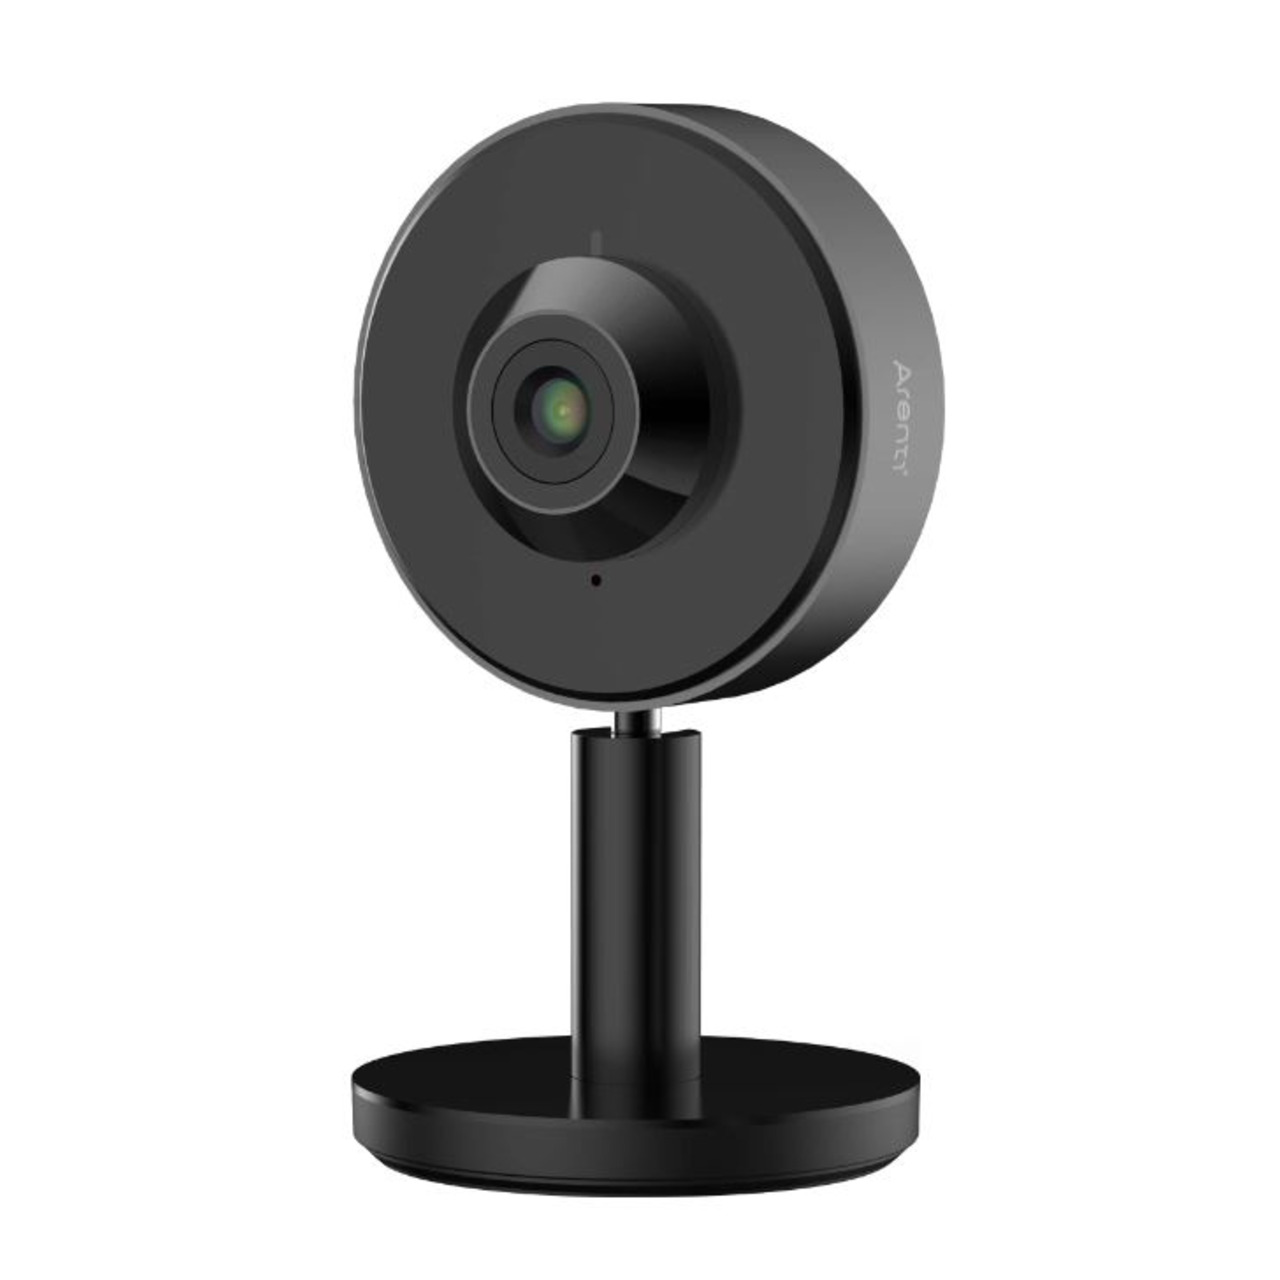 Arenti WLAN-Indoor-Überwachungskamera INDOOR1- 2K-Auflösung- App- Amazon Alexa